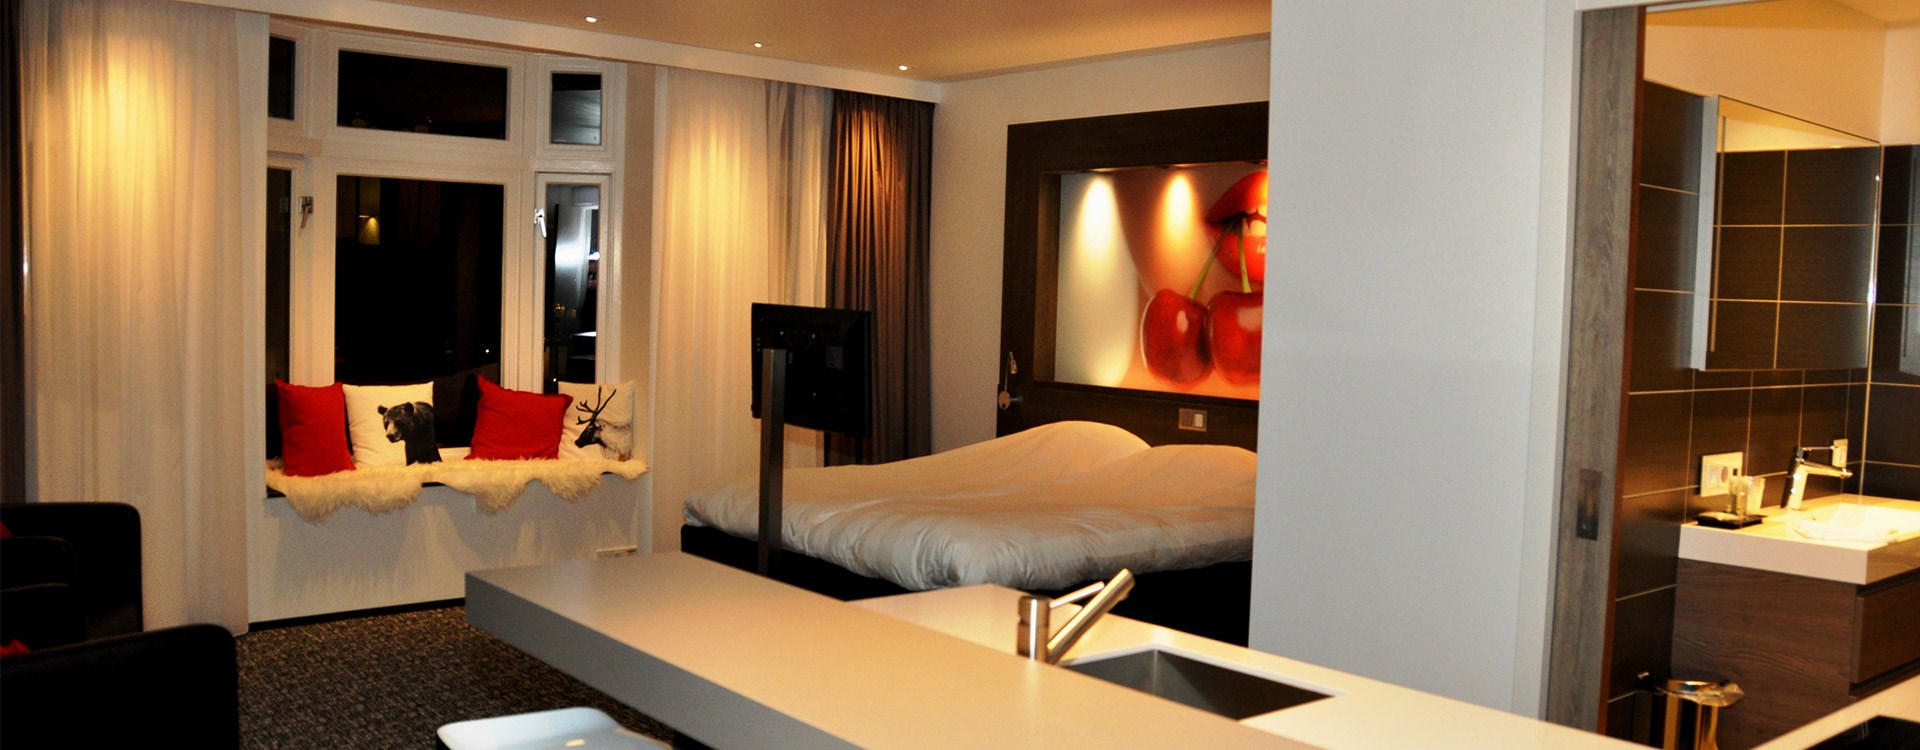 Vijf luxe hotelkamers